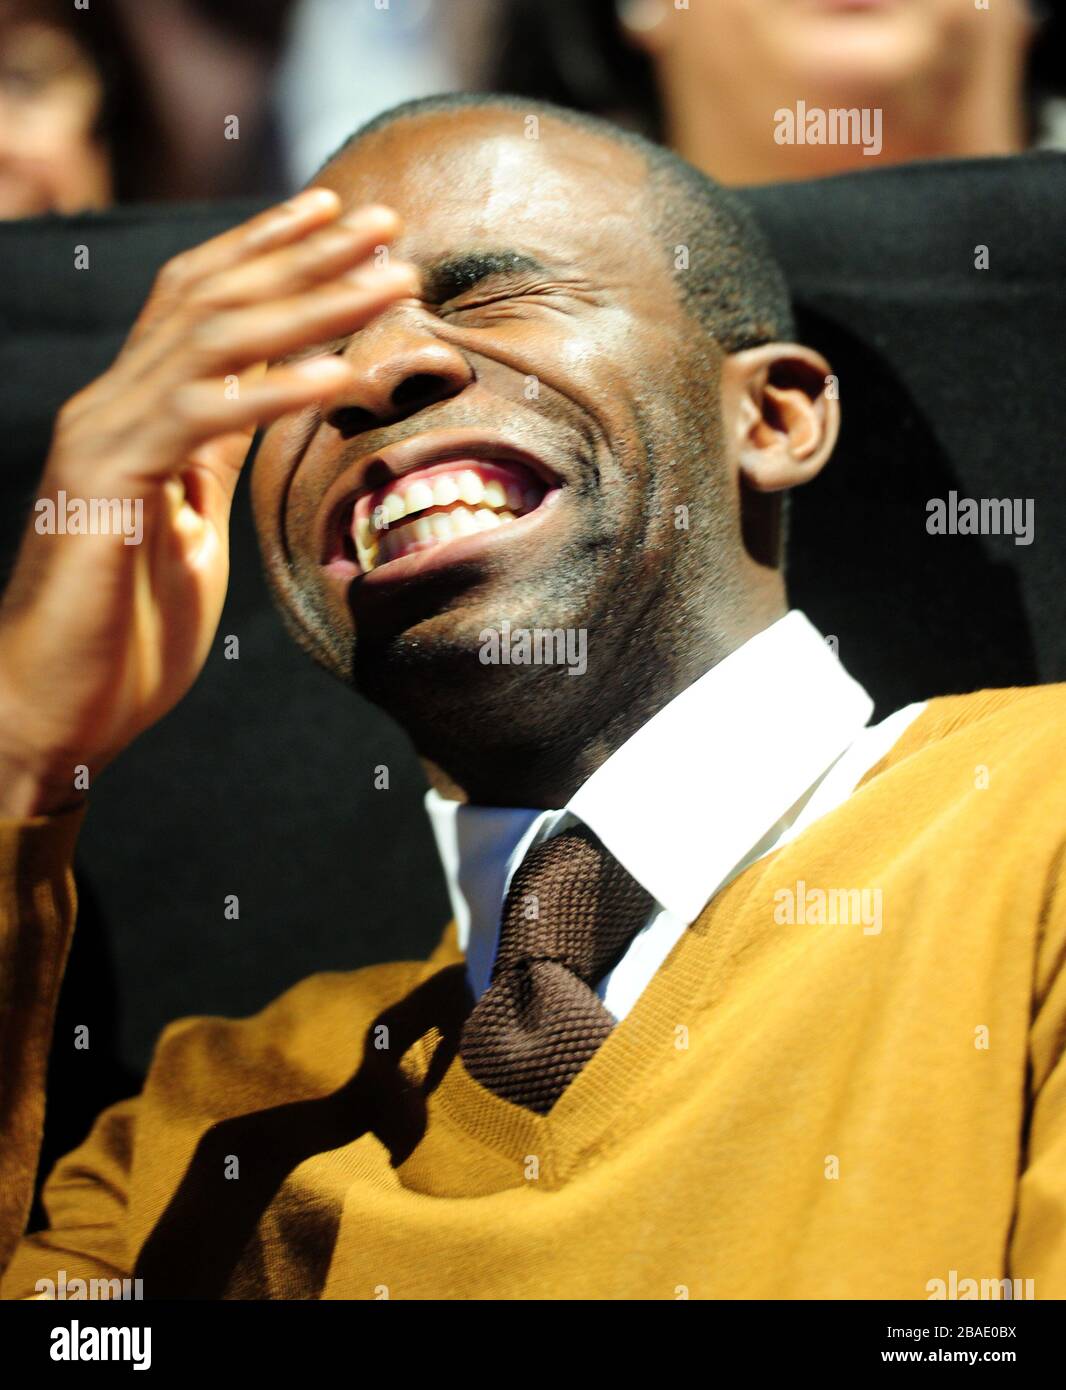 Il calciatore in pensione Fabrice Muamba reagisce a uno scherzo durante un intervallo alla partita Andy Murray Jo Wilfried Tsonga Foto Stock